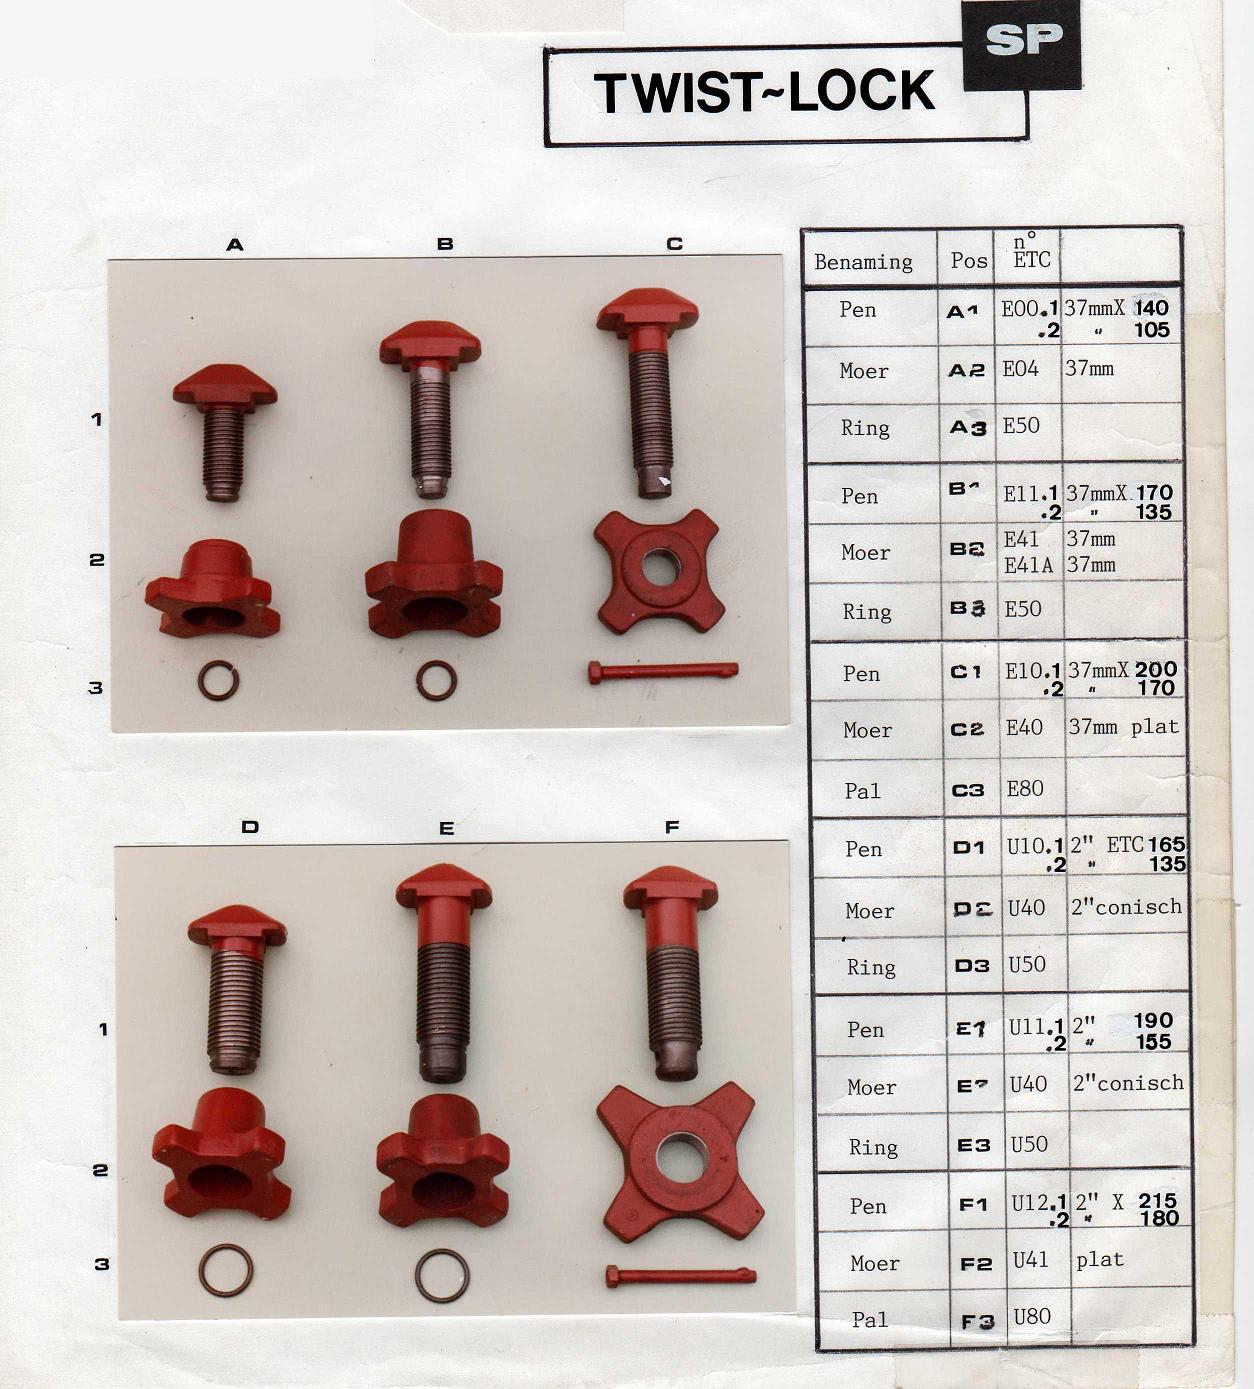 twist-lock SP